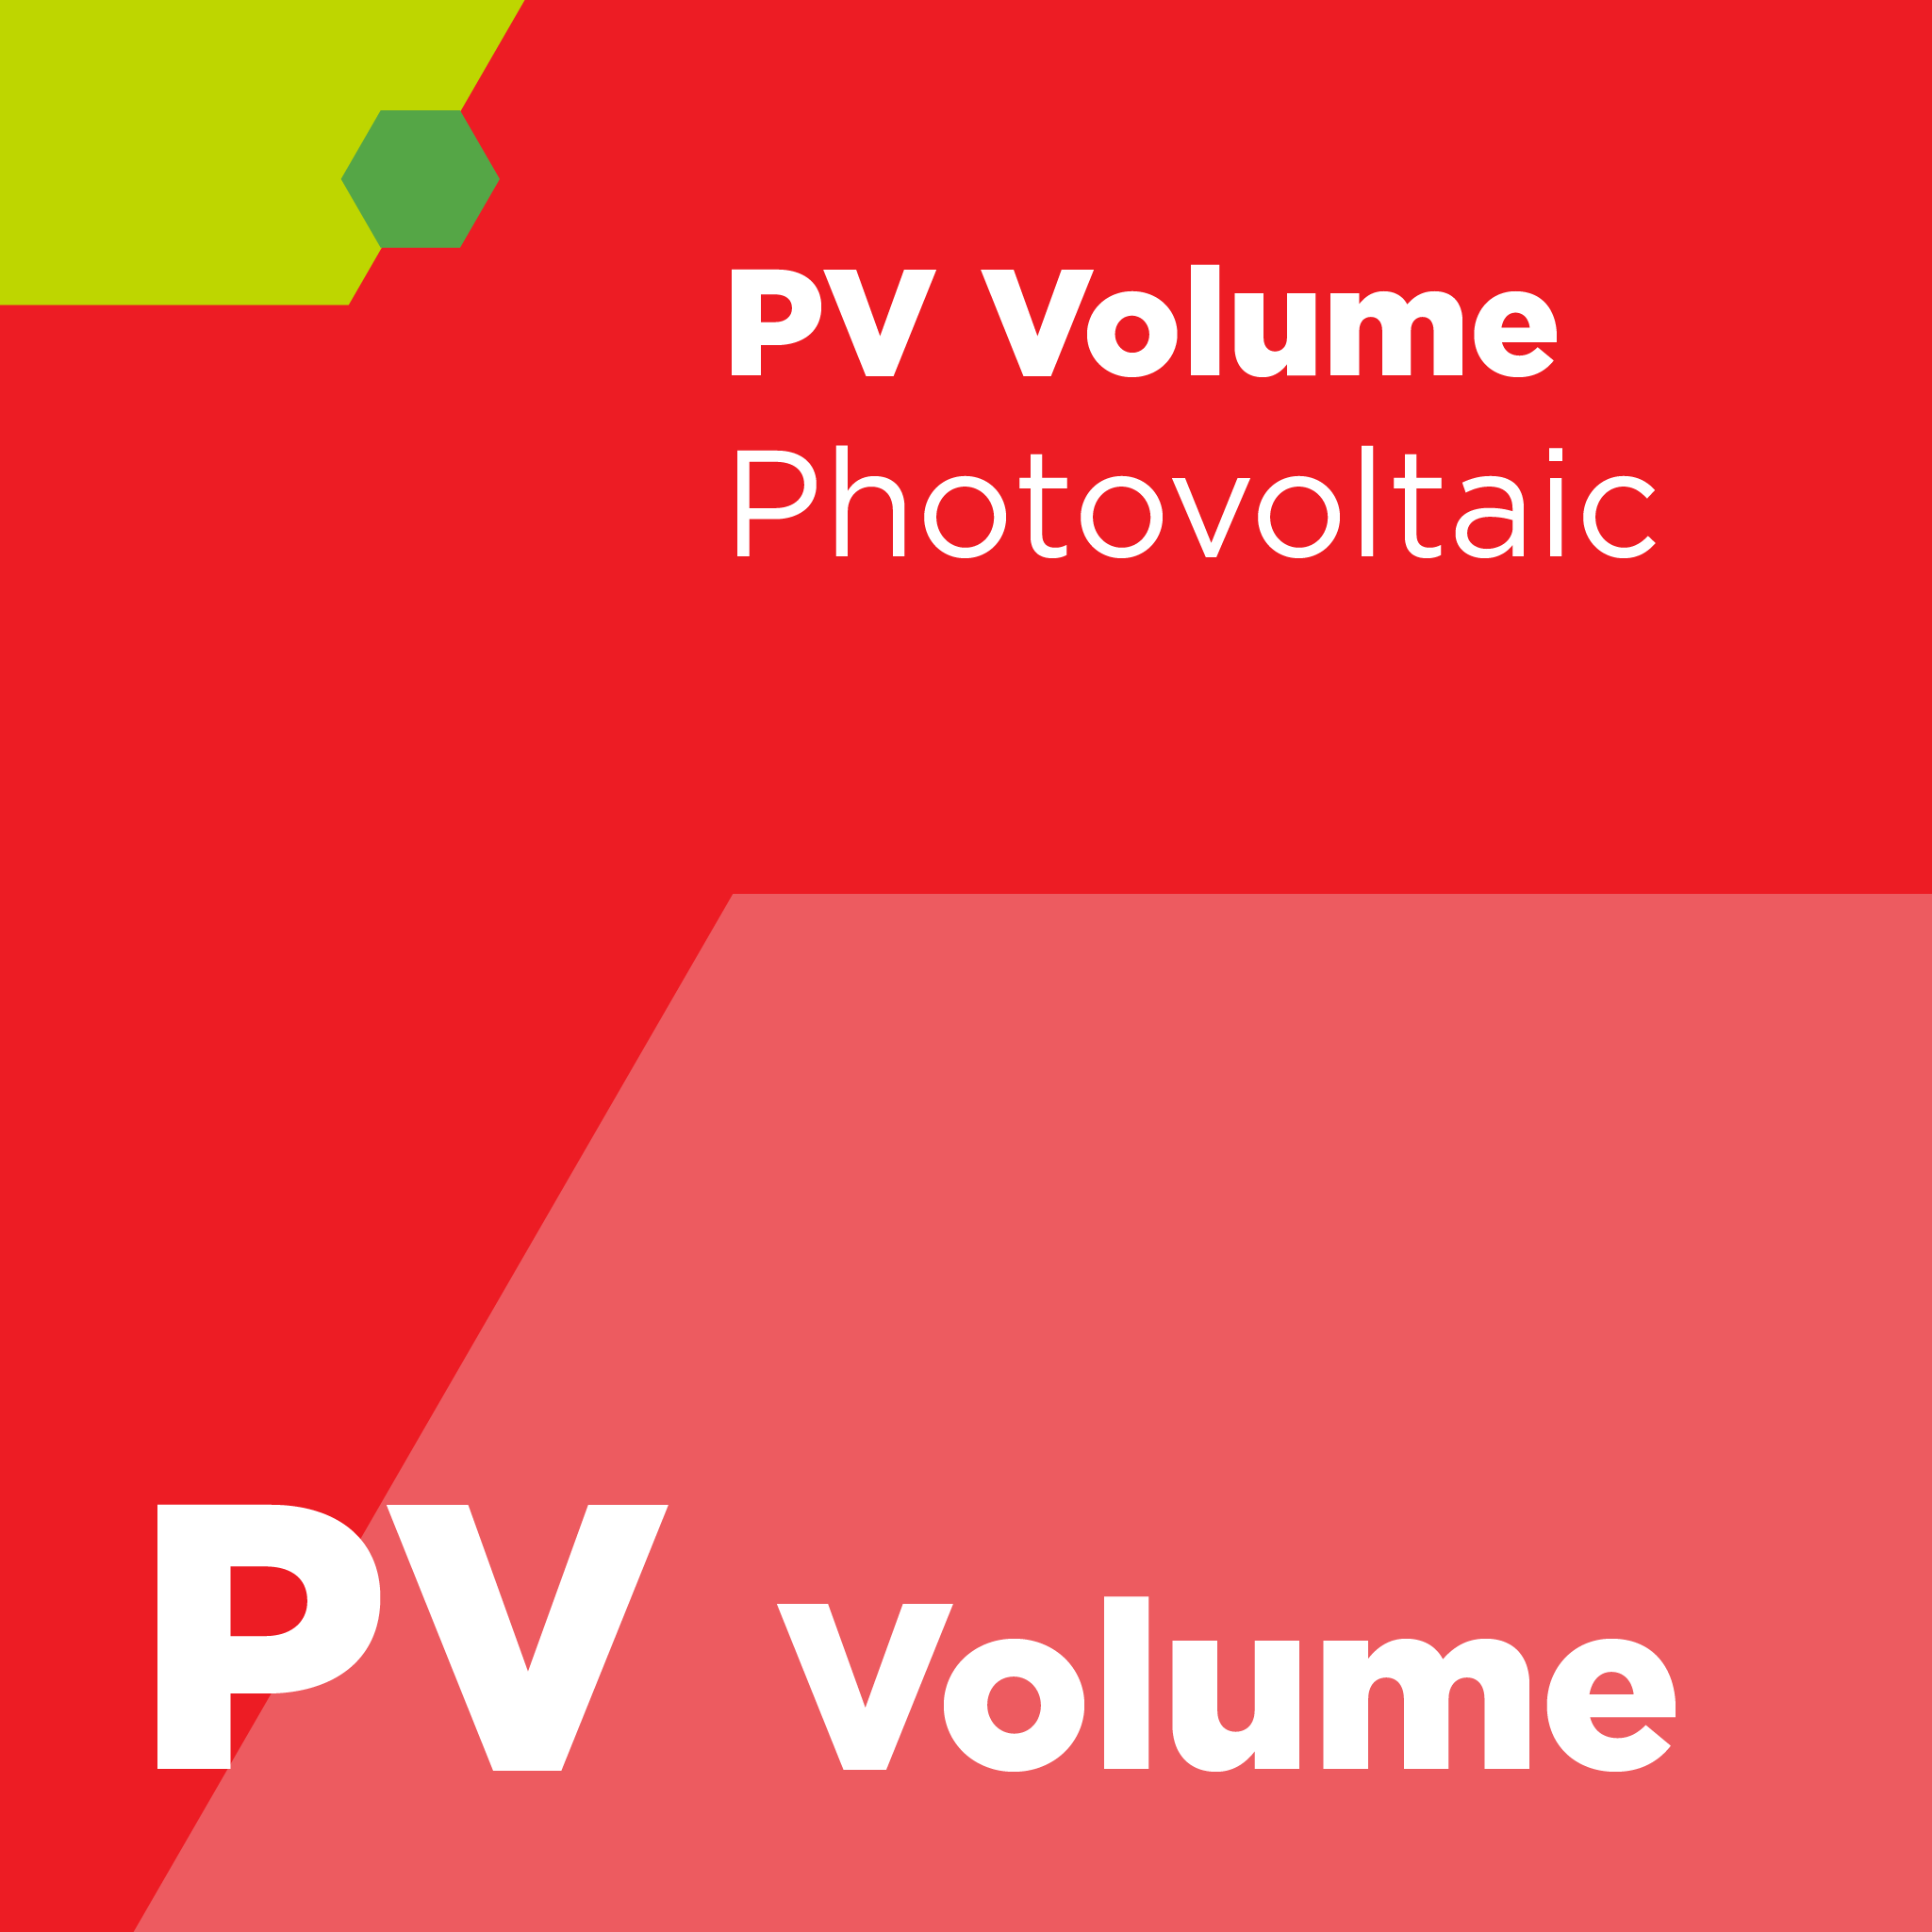 PV00300 - SEMI PV3 - 太陽電池加工に用いる高純度水に関するガイド